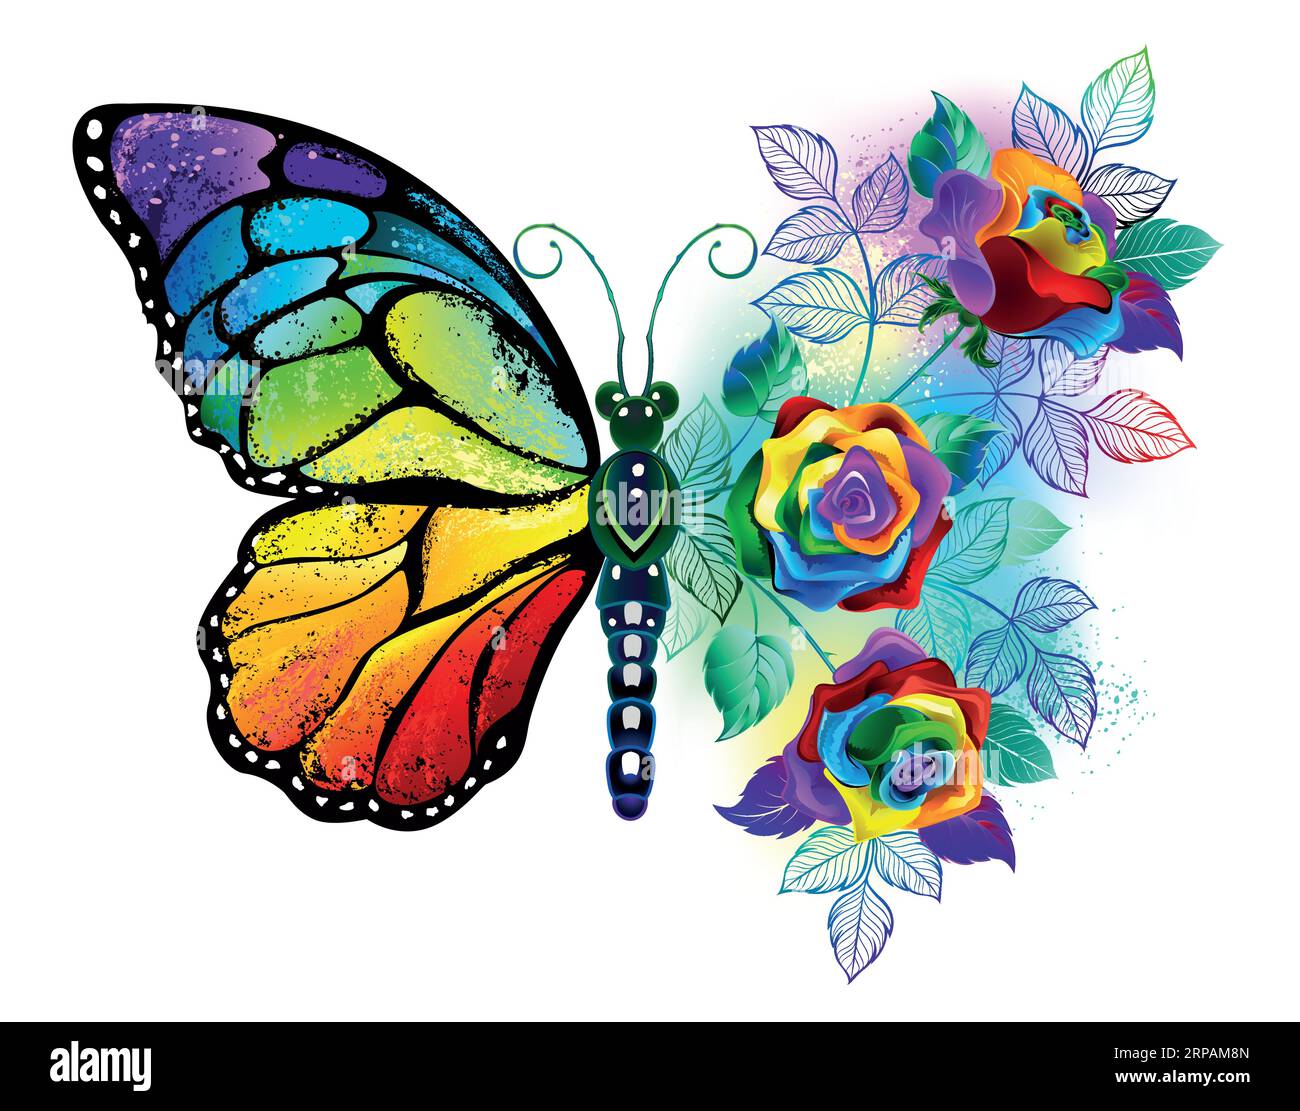 Farfalla monarca iridescente, testurizzata, disegnata artisticamente con bouquet di arcobaleno, luminosa, rose su sfondo bianco. Farfalla arcobaleno. Illustrazione Vettoriale